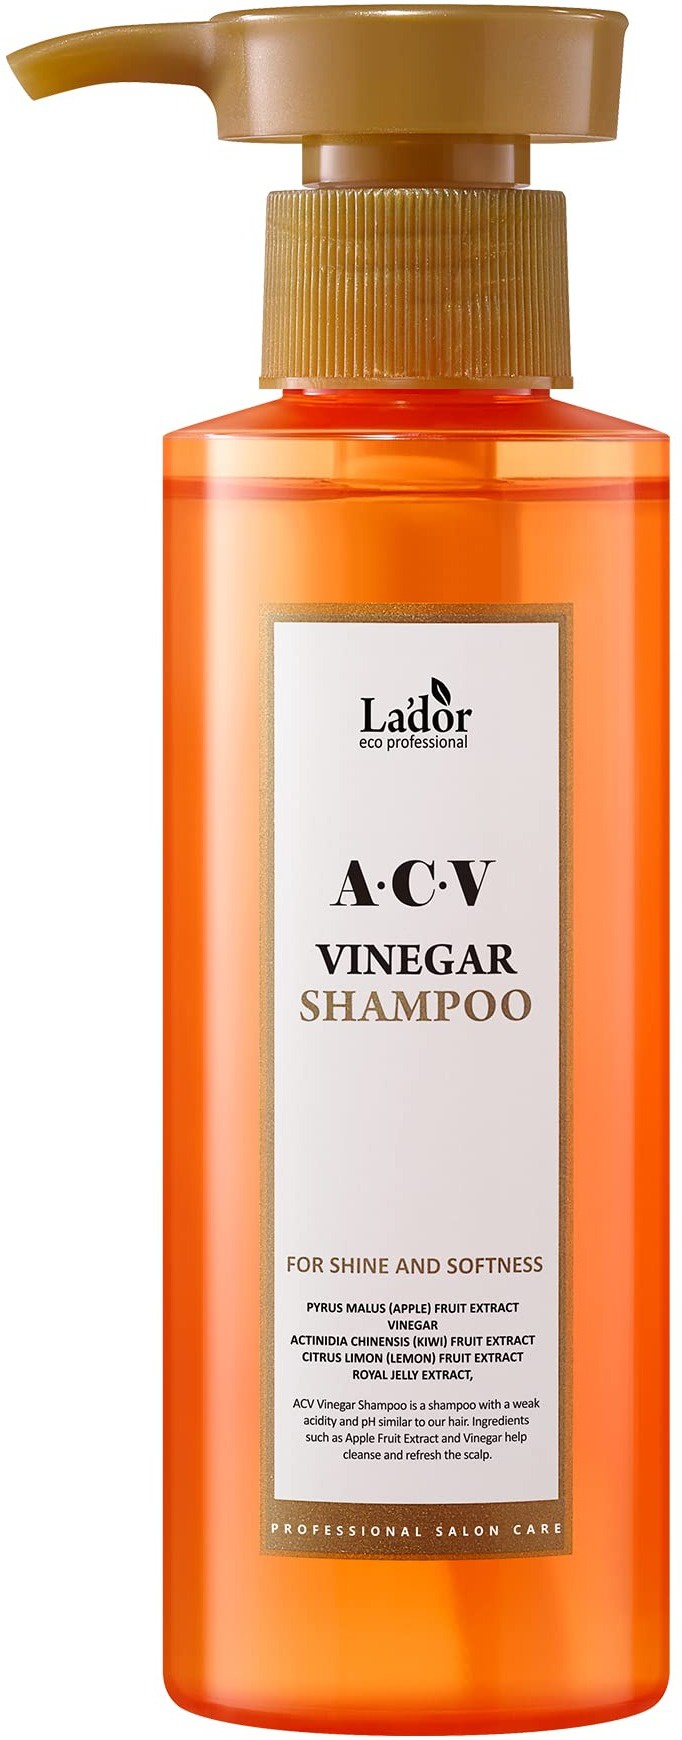 Lador Acv Vinegar Shampoo